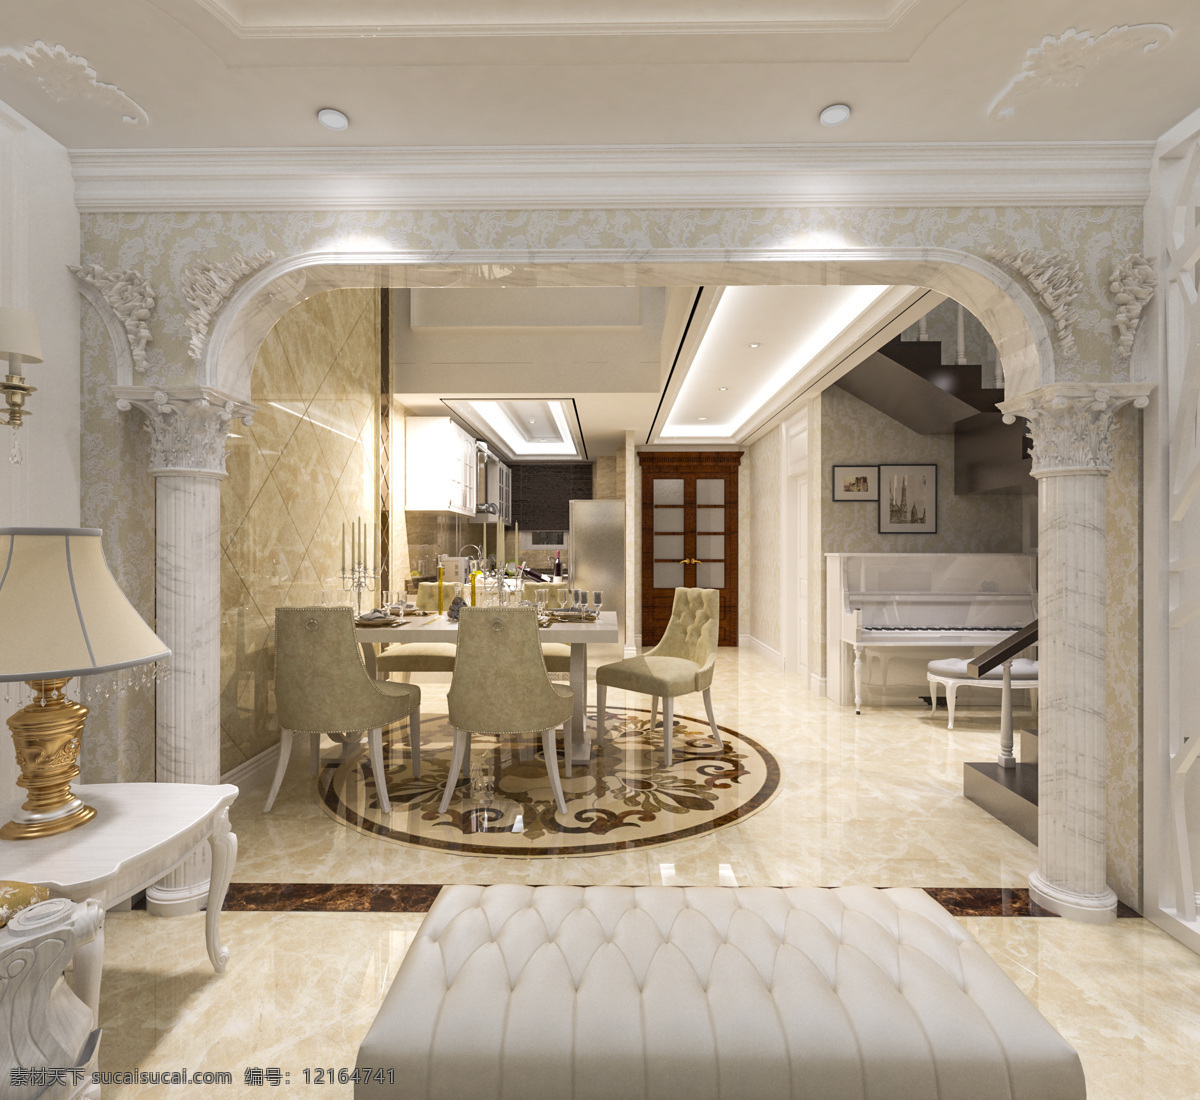 欧式 餐厅 效果图 3d模型 欧式效果图 室内设计 欧式罗马柱 餐厅效果图